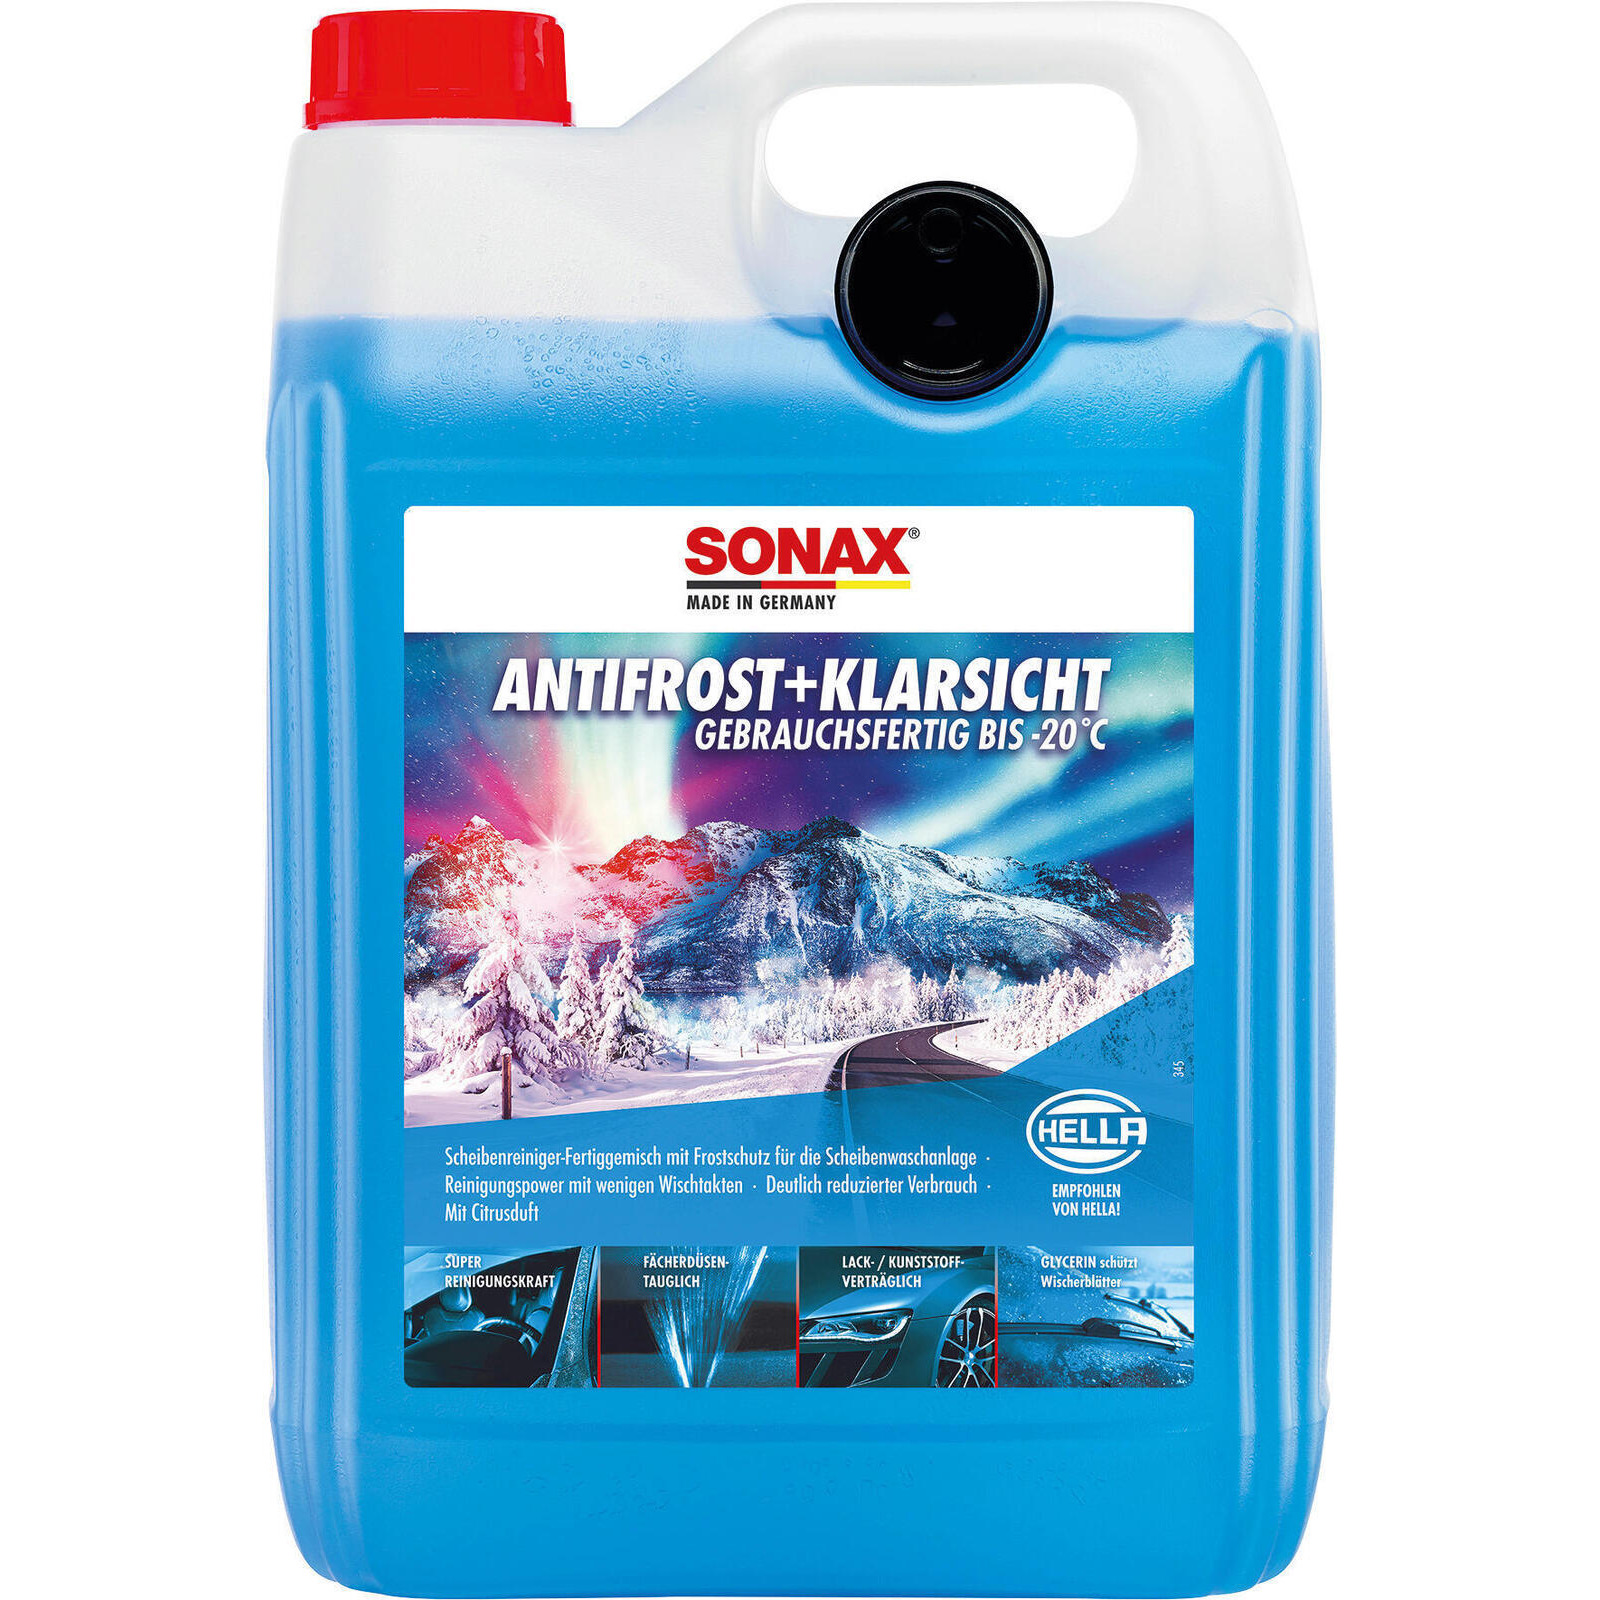 SONAX Frostschutz, Scheibenreinigungsanlage AntiFrost+KlarSicht bis -20 °C